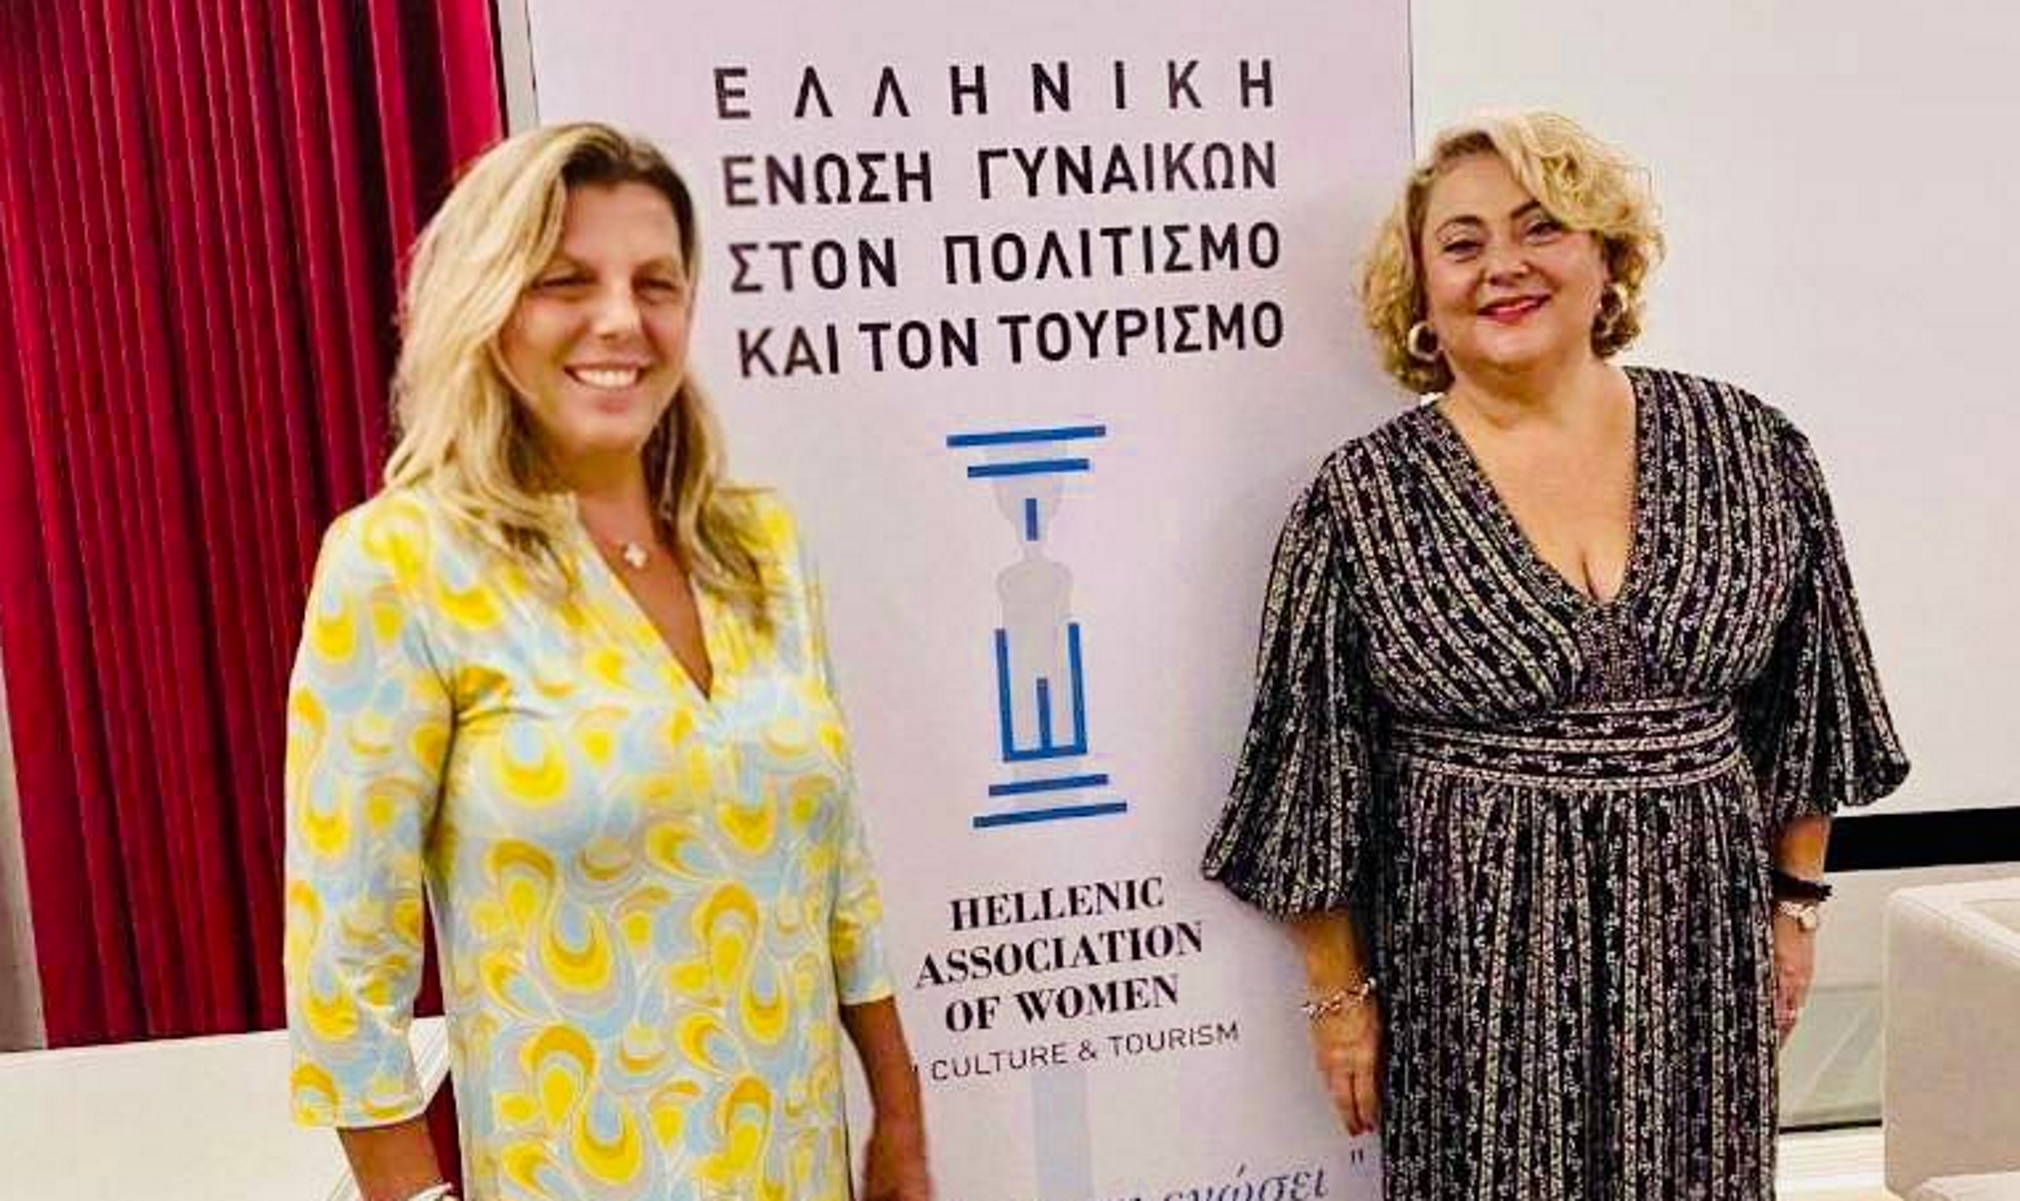 Η Ελληνική Ένωση Γυναικών στον Πολιτισμό και τον Τουρισμό εξέλεξε νέο Διοικητικό Συμβούλιο